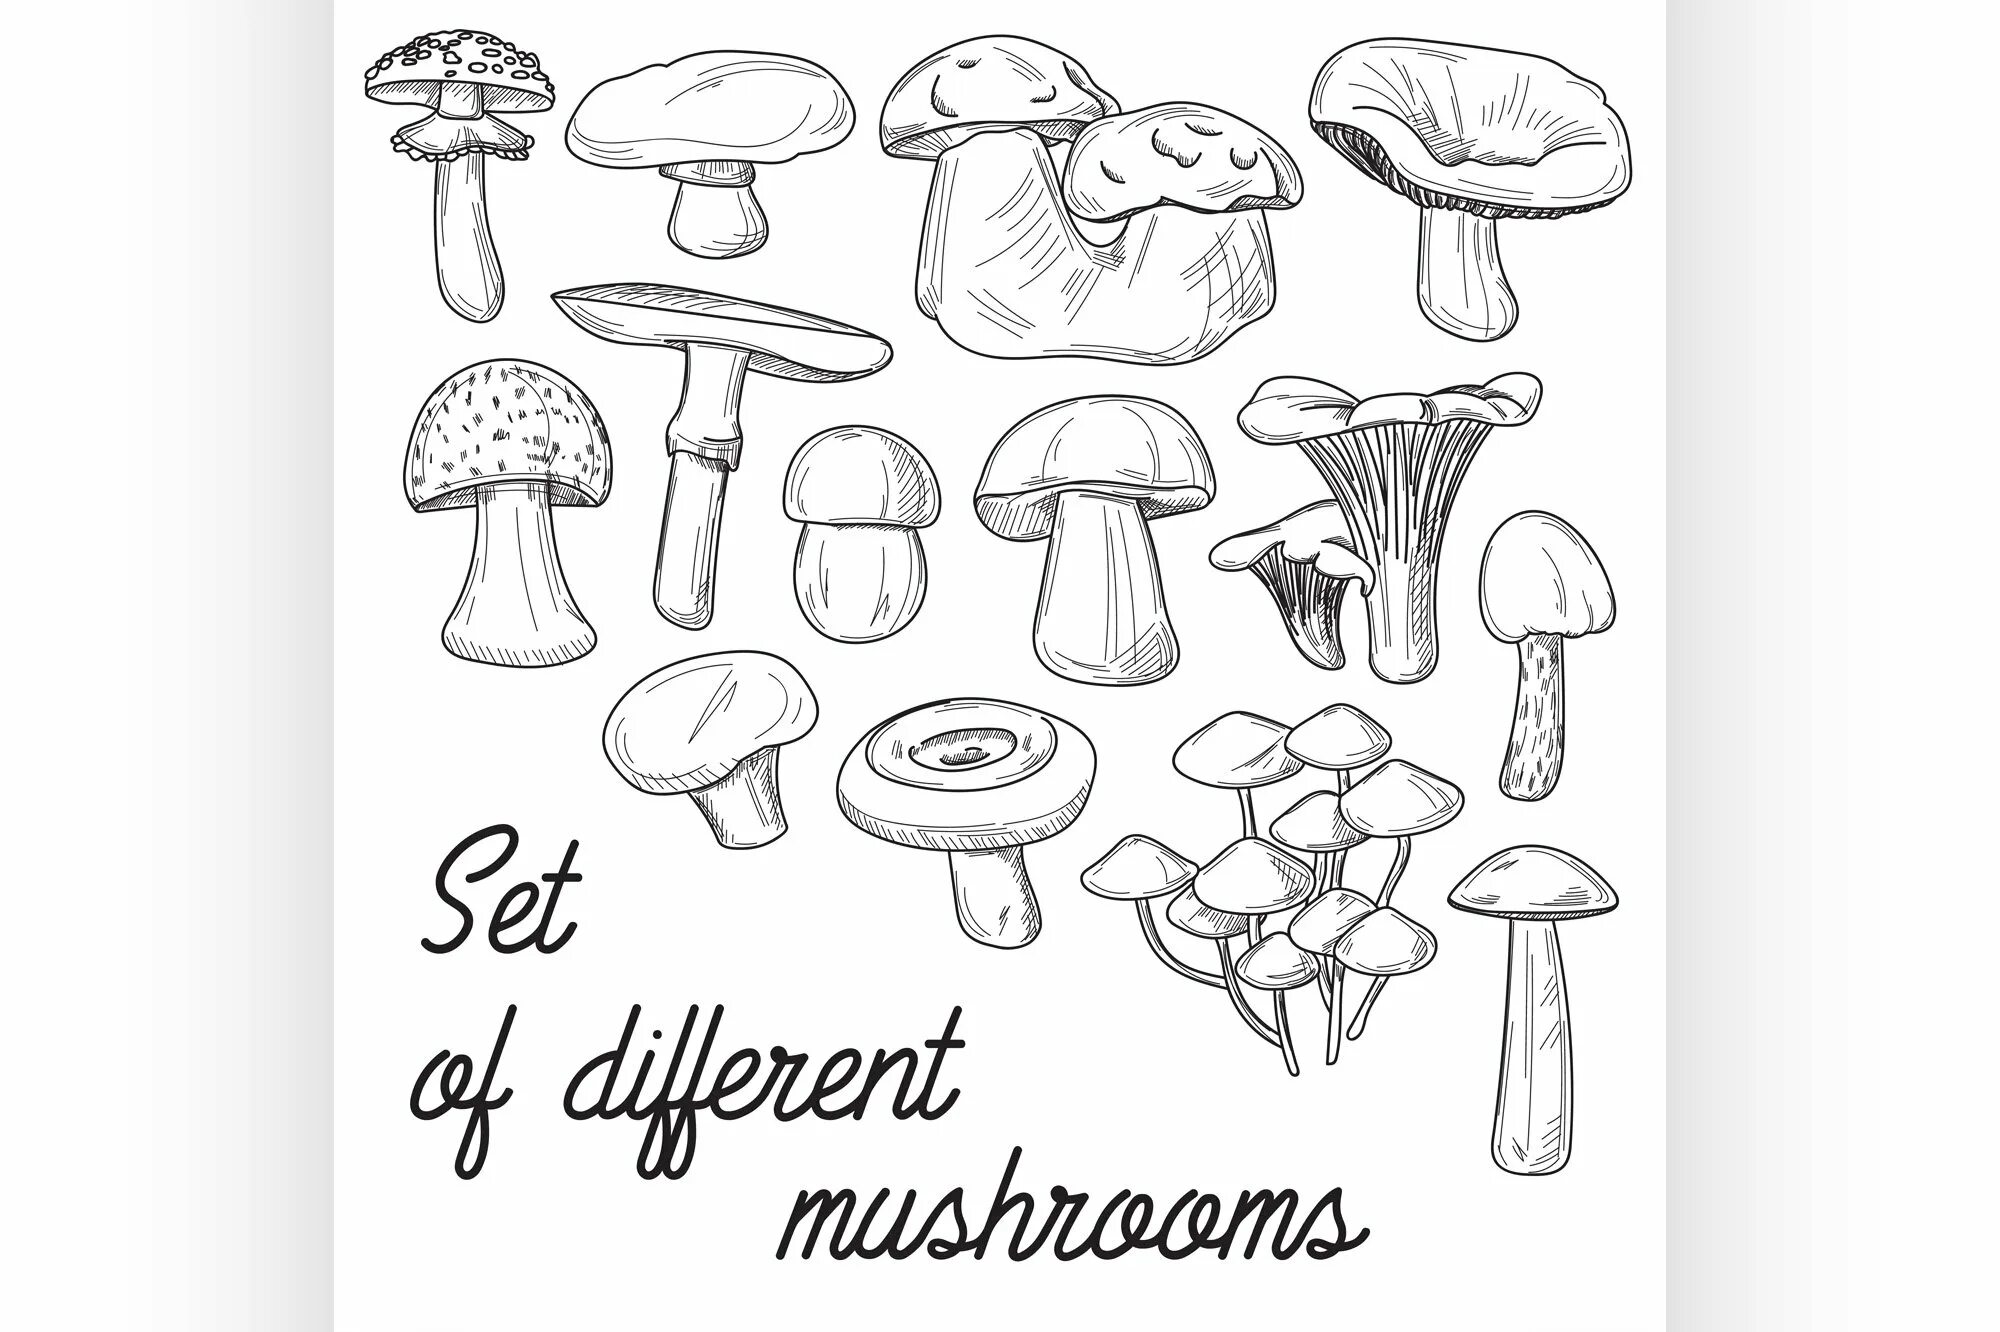 Coloring book of inedible mushrooms